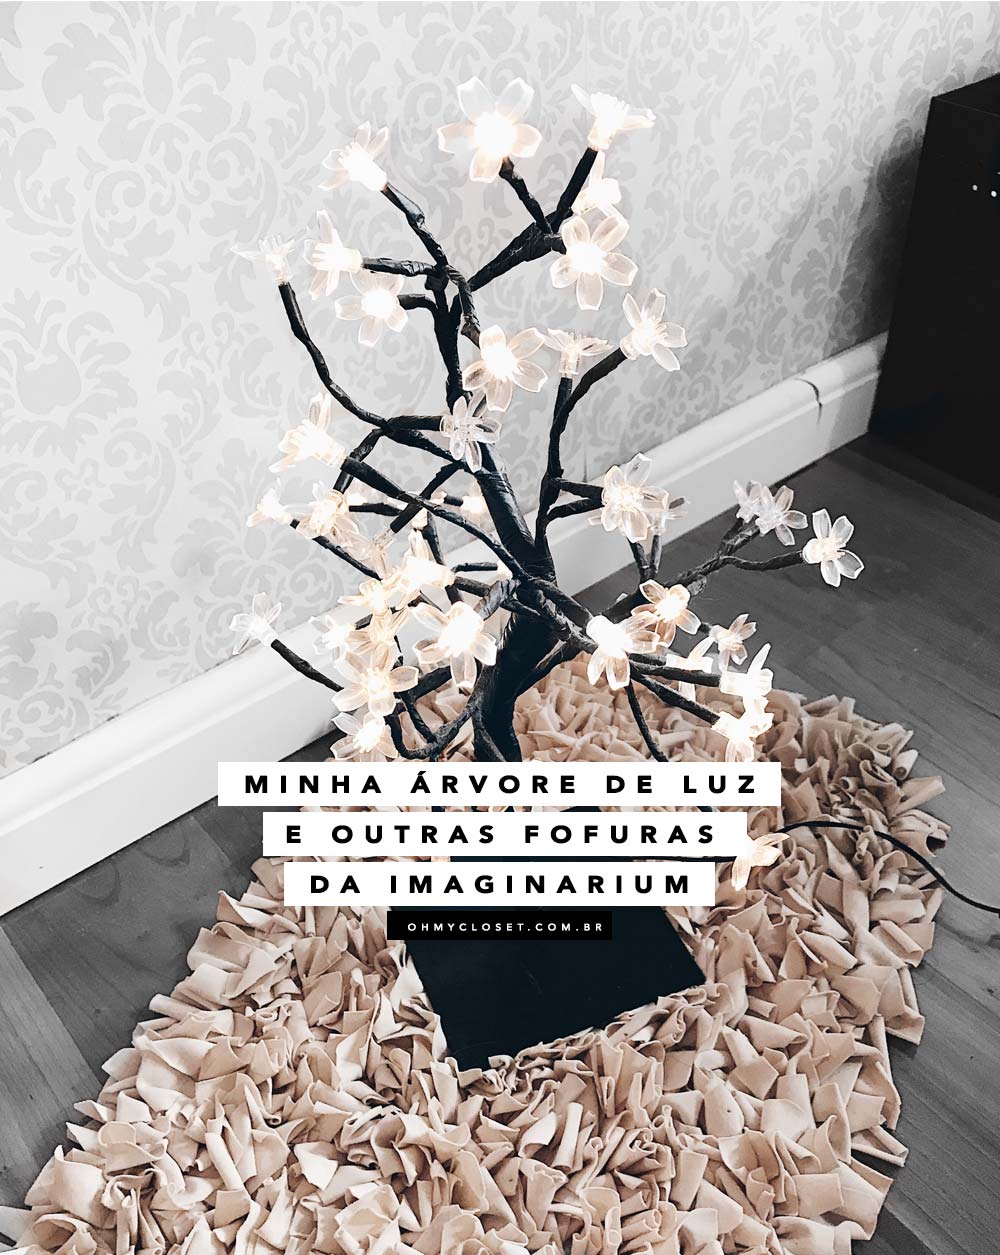 Minha árvore de luz e outras fofuras da Imaginarium décor dicas Oh My Closet Mônica Araújo